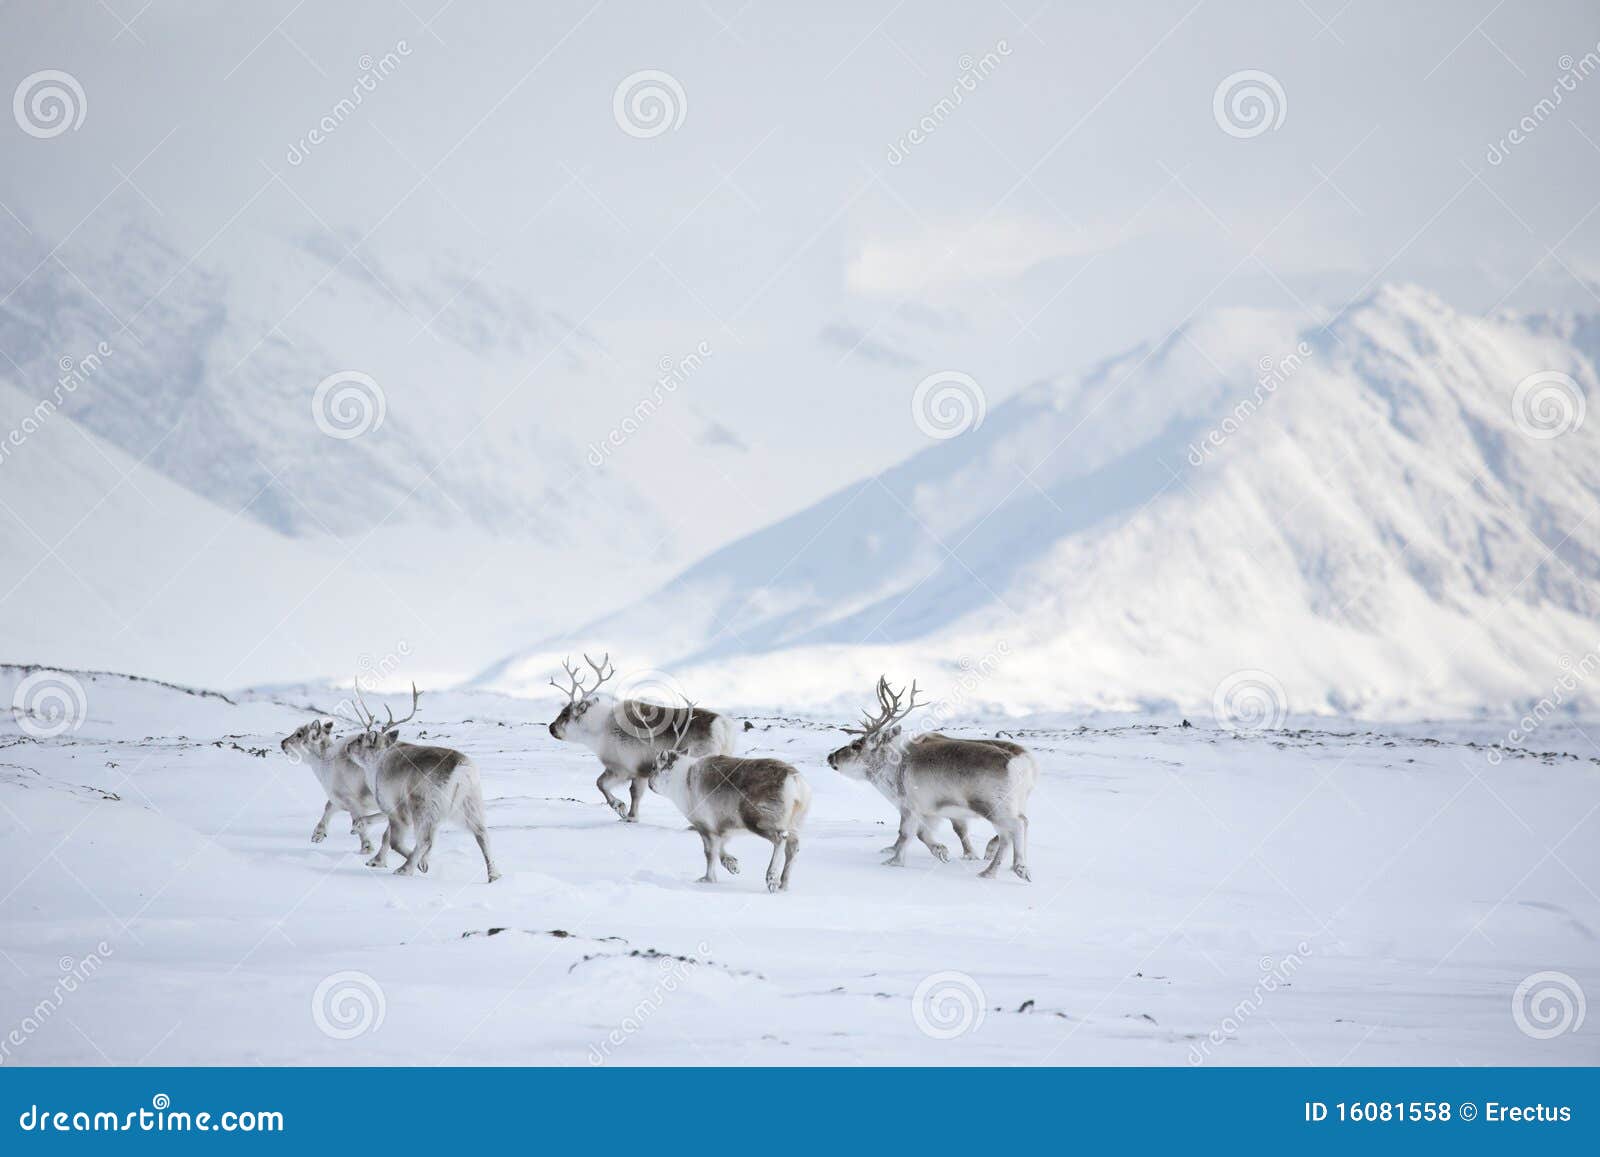 arctic reindeers